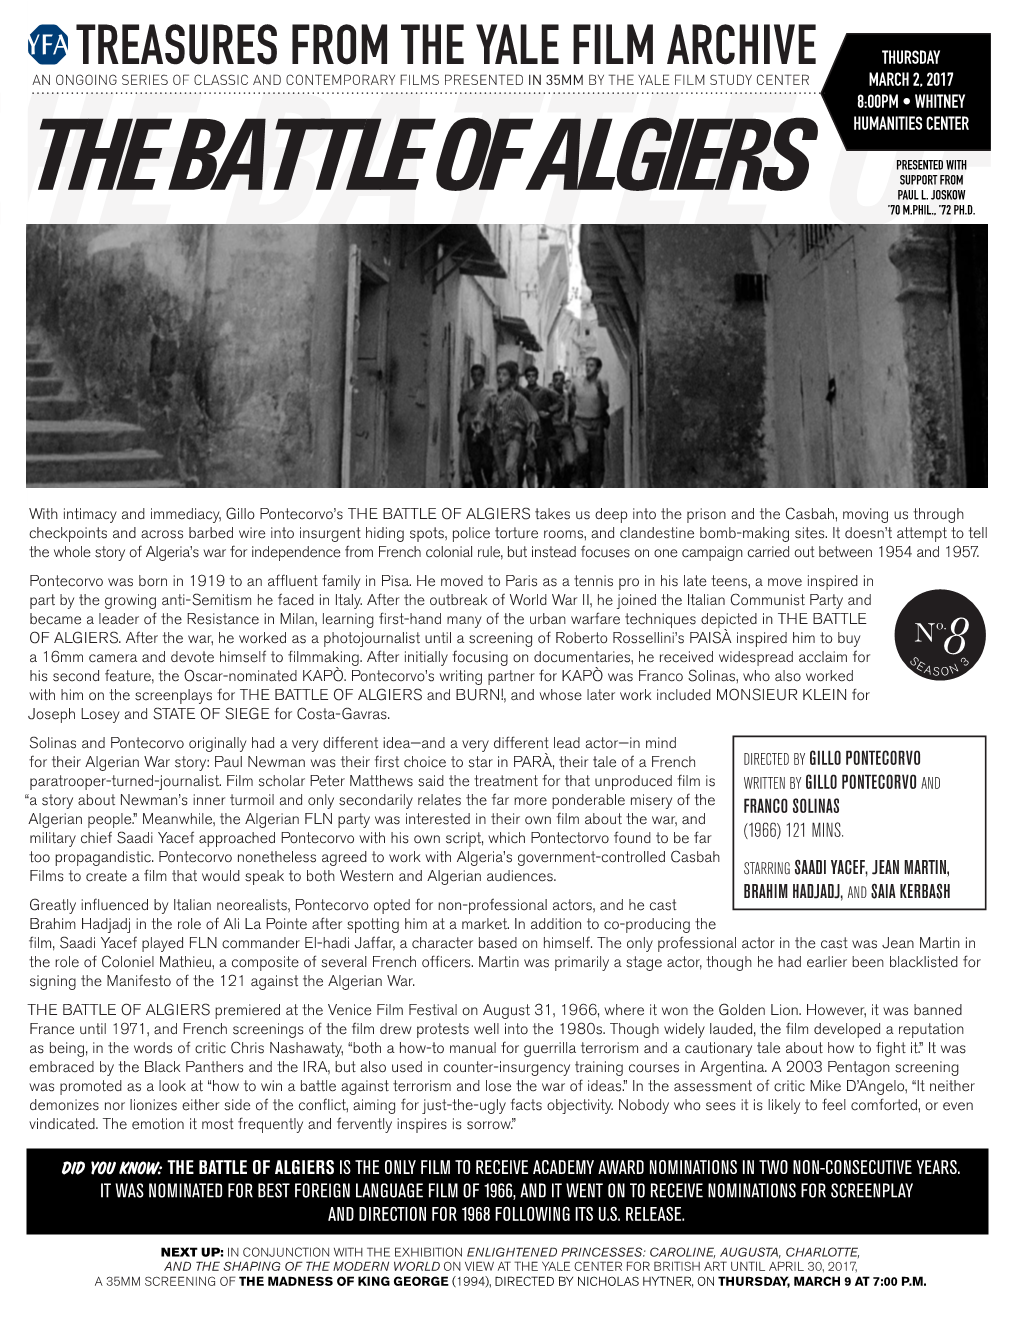 The Battle of Algiers Paul L